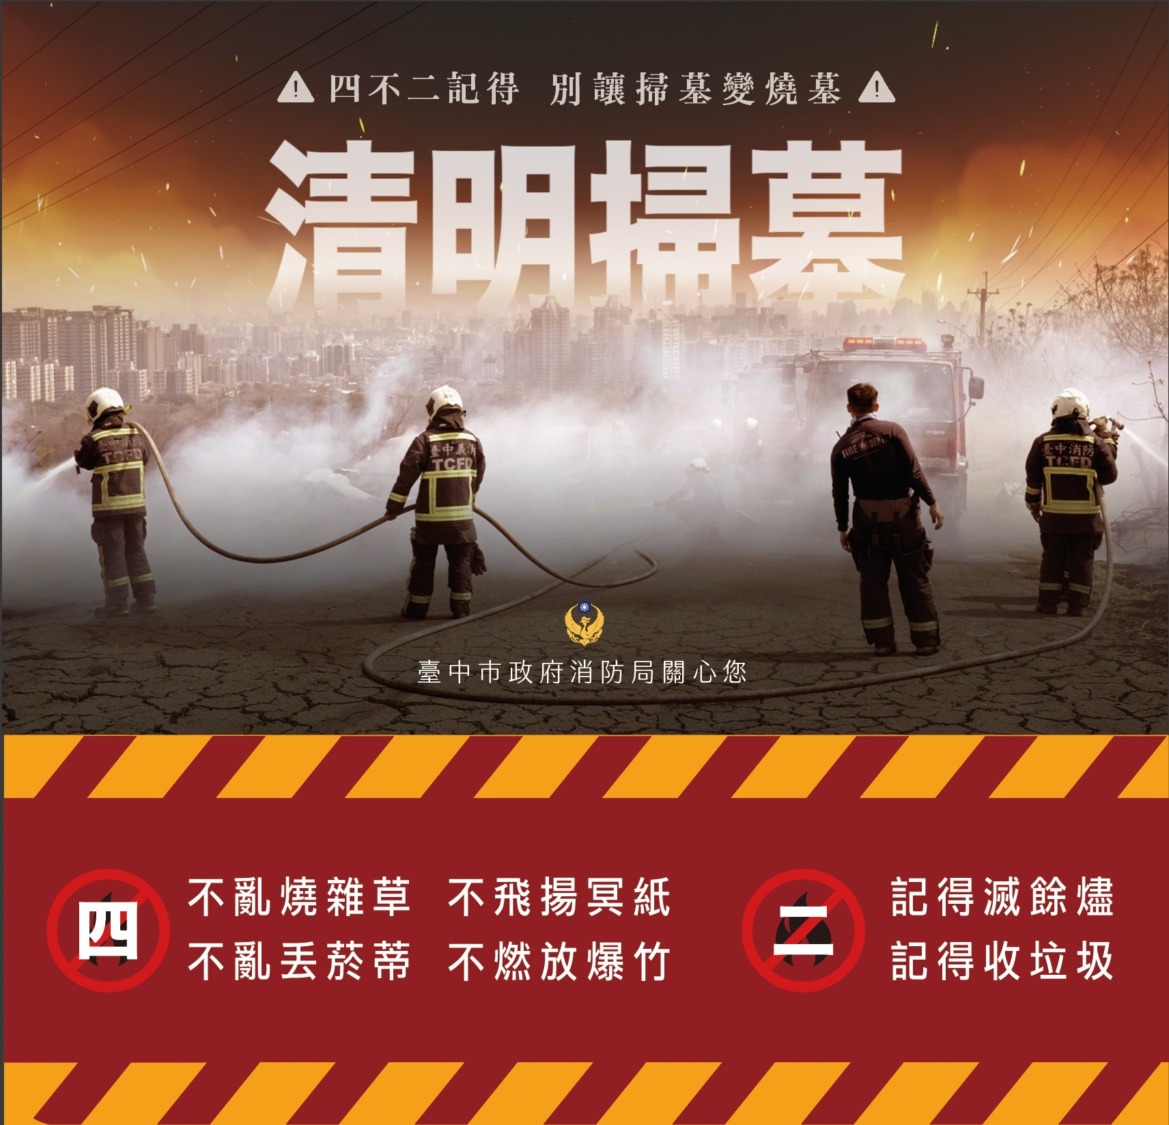 驚險打火影片首曝光 中市消防局：掃墓切記「4不2記得」